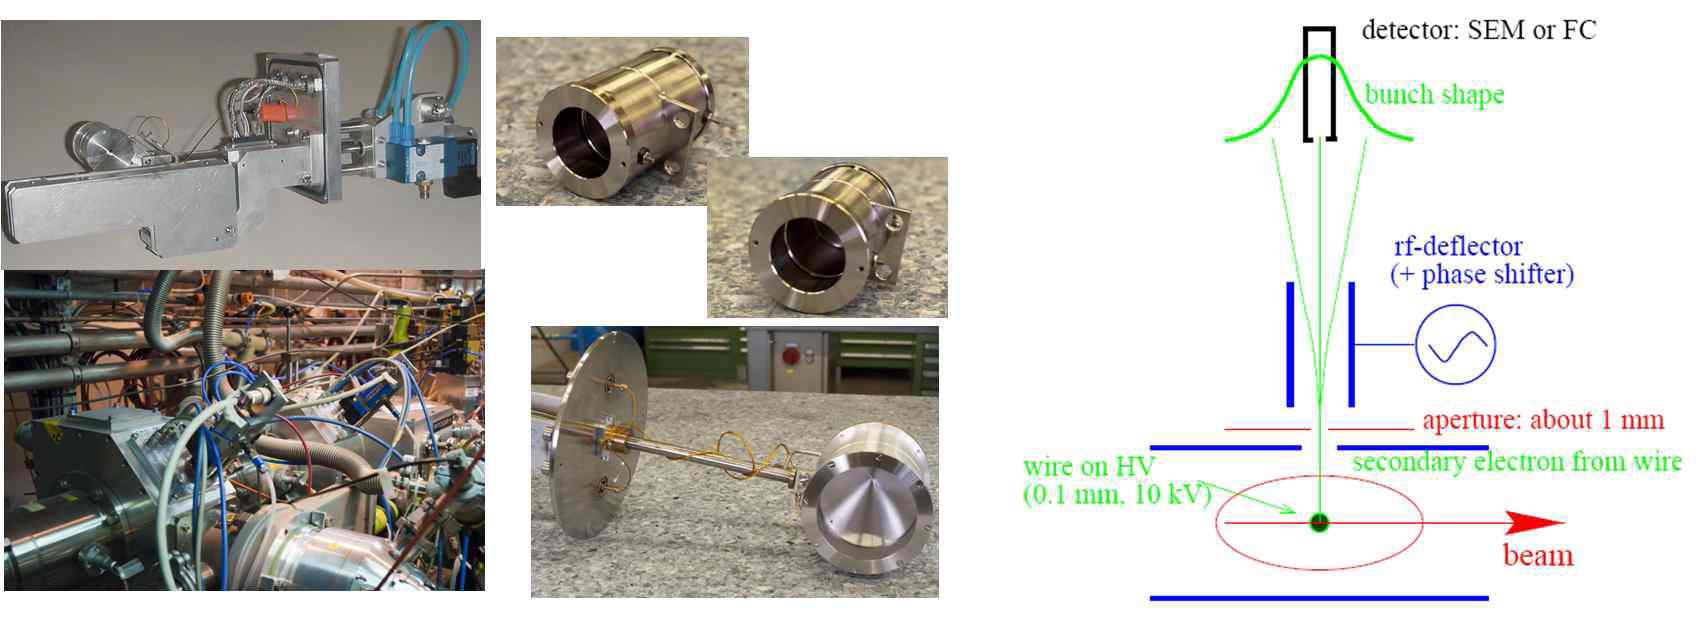 (좌) CERN ISOLDE 내의 wire 빔 스캐너와 Faraday cups (우) 빔 윤곽 측정을 위한 반사 기술의 원리. SEM 은 이차전자 방출 증폭.